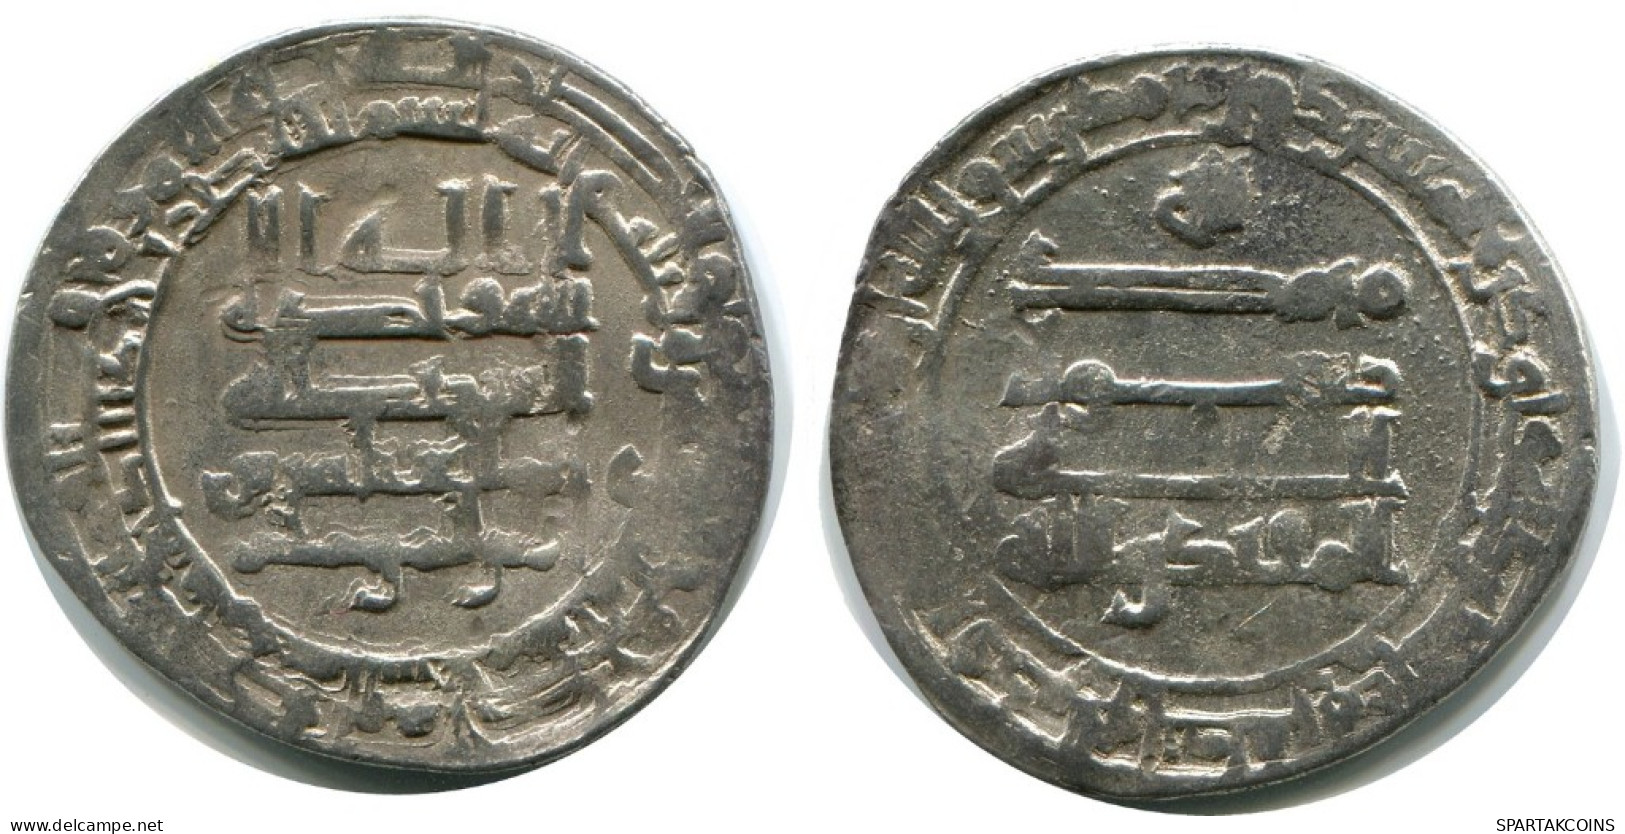 ABBASID AL-MUQTADIR AH 295-320/ 908-932 AD Silver DIRHAM #AH181.45.D.A - Orientale